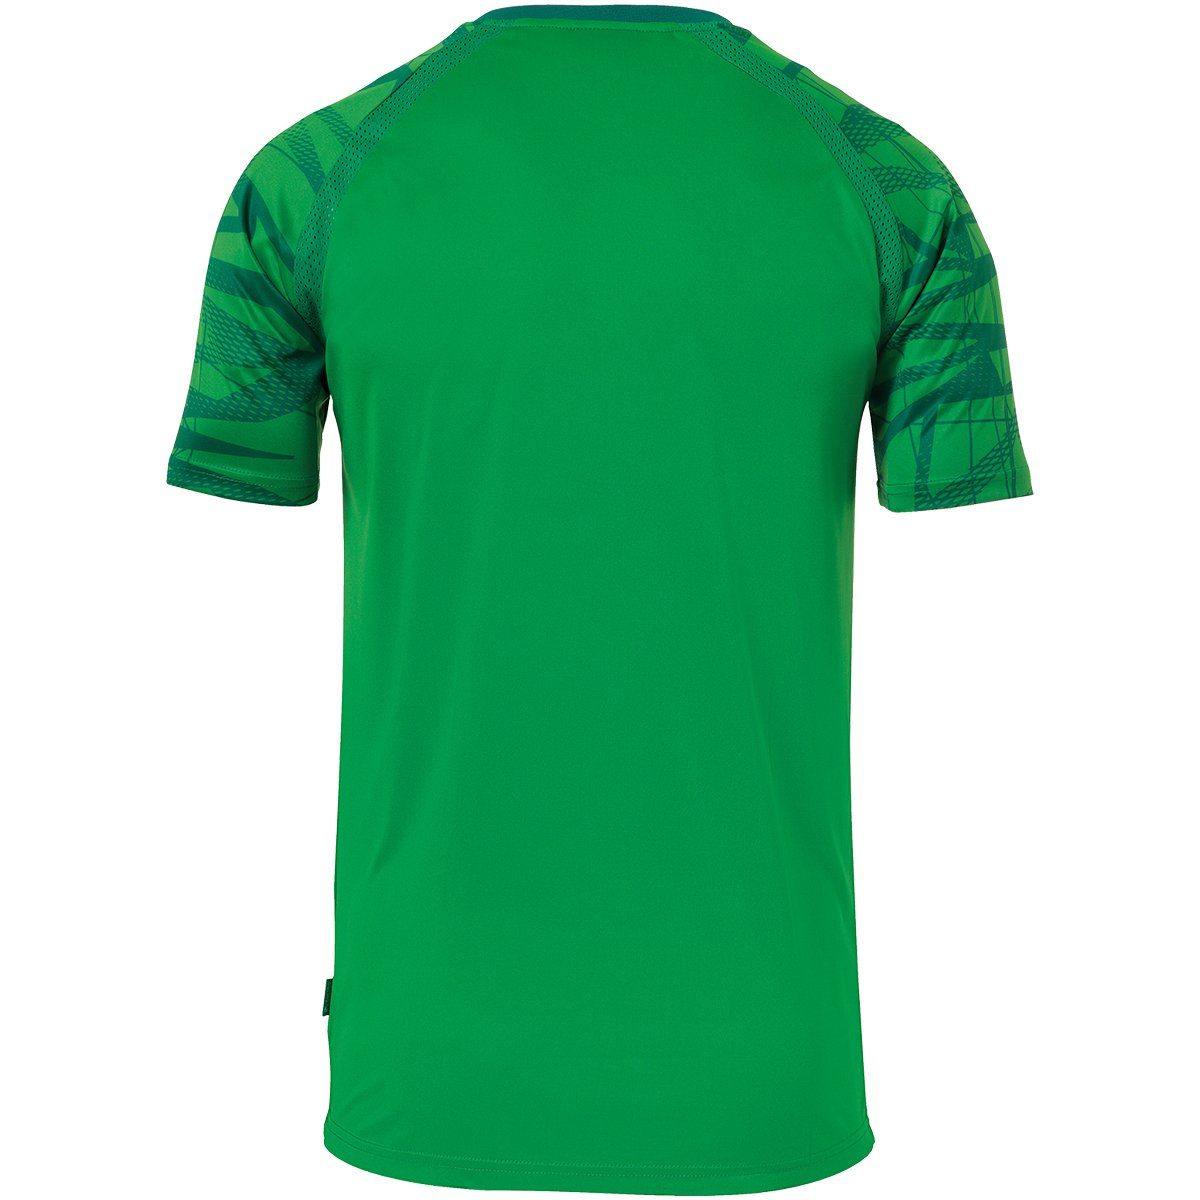 GOAL Trainings-T-Shirt atmungsaktiv TRIKOT uhlsport Trainingsshirt grün/lagune KURZARM uhlsport 25